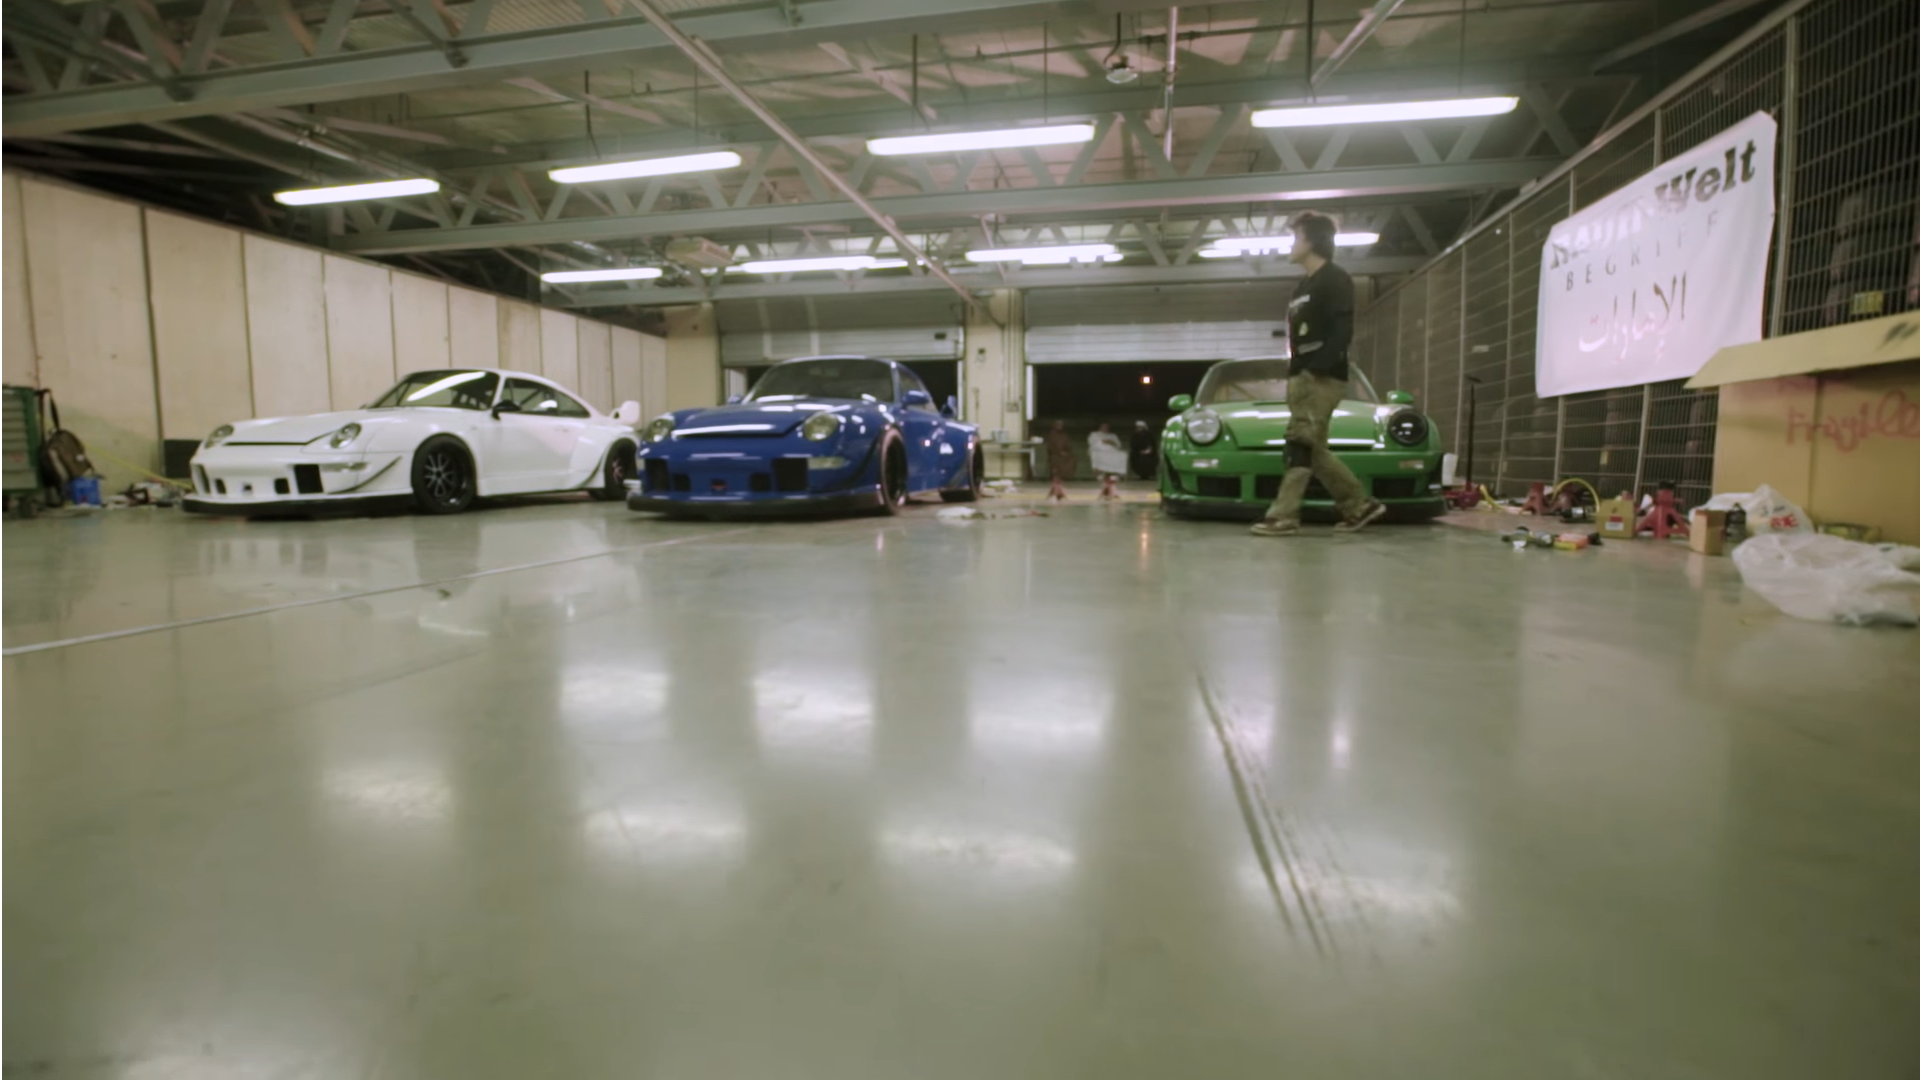 Watch Nakai Build 3 RWB Porsches In 6 Days